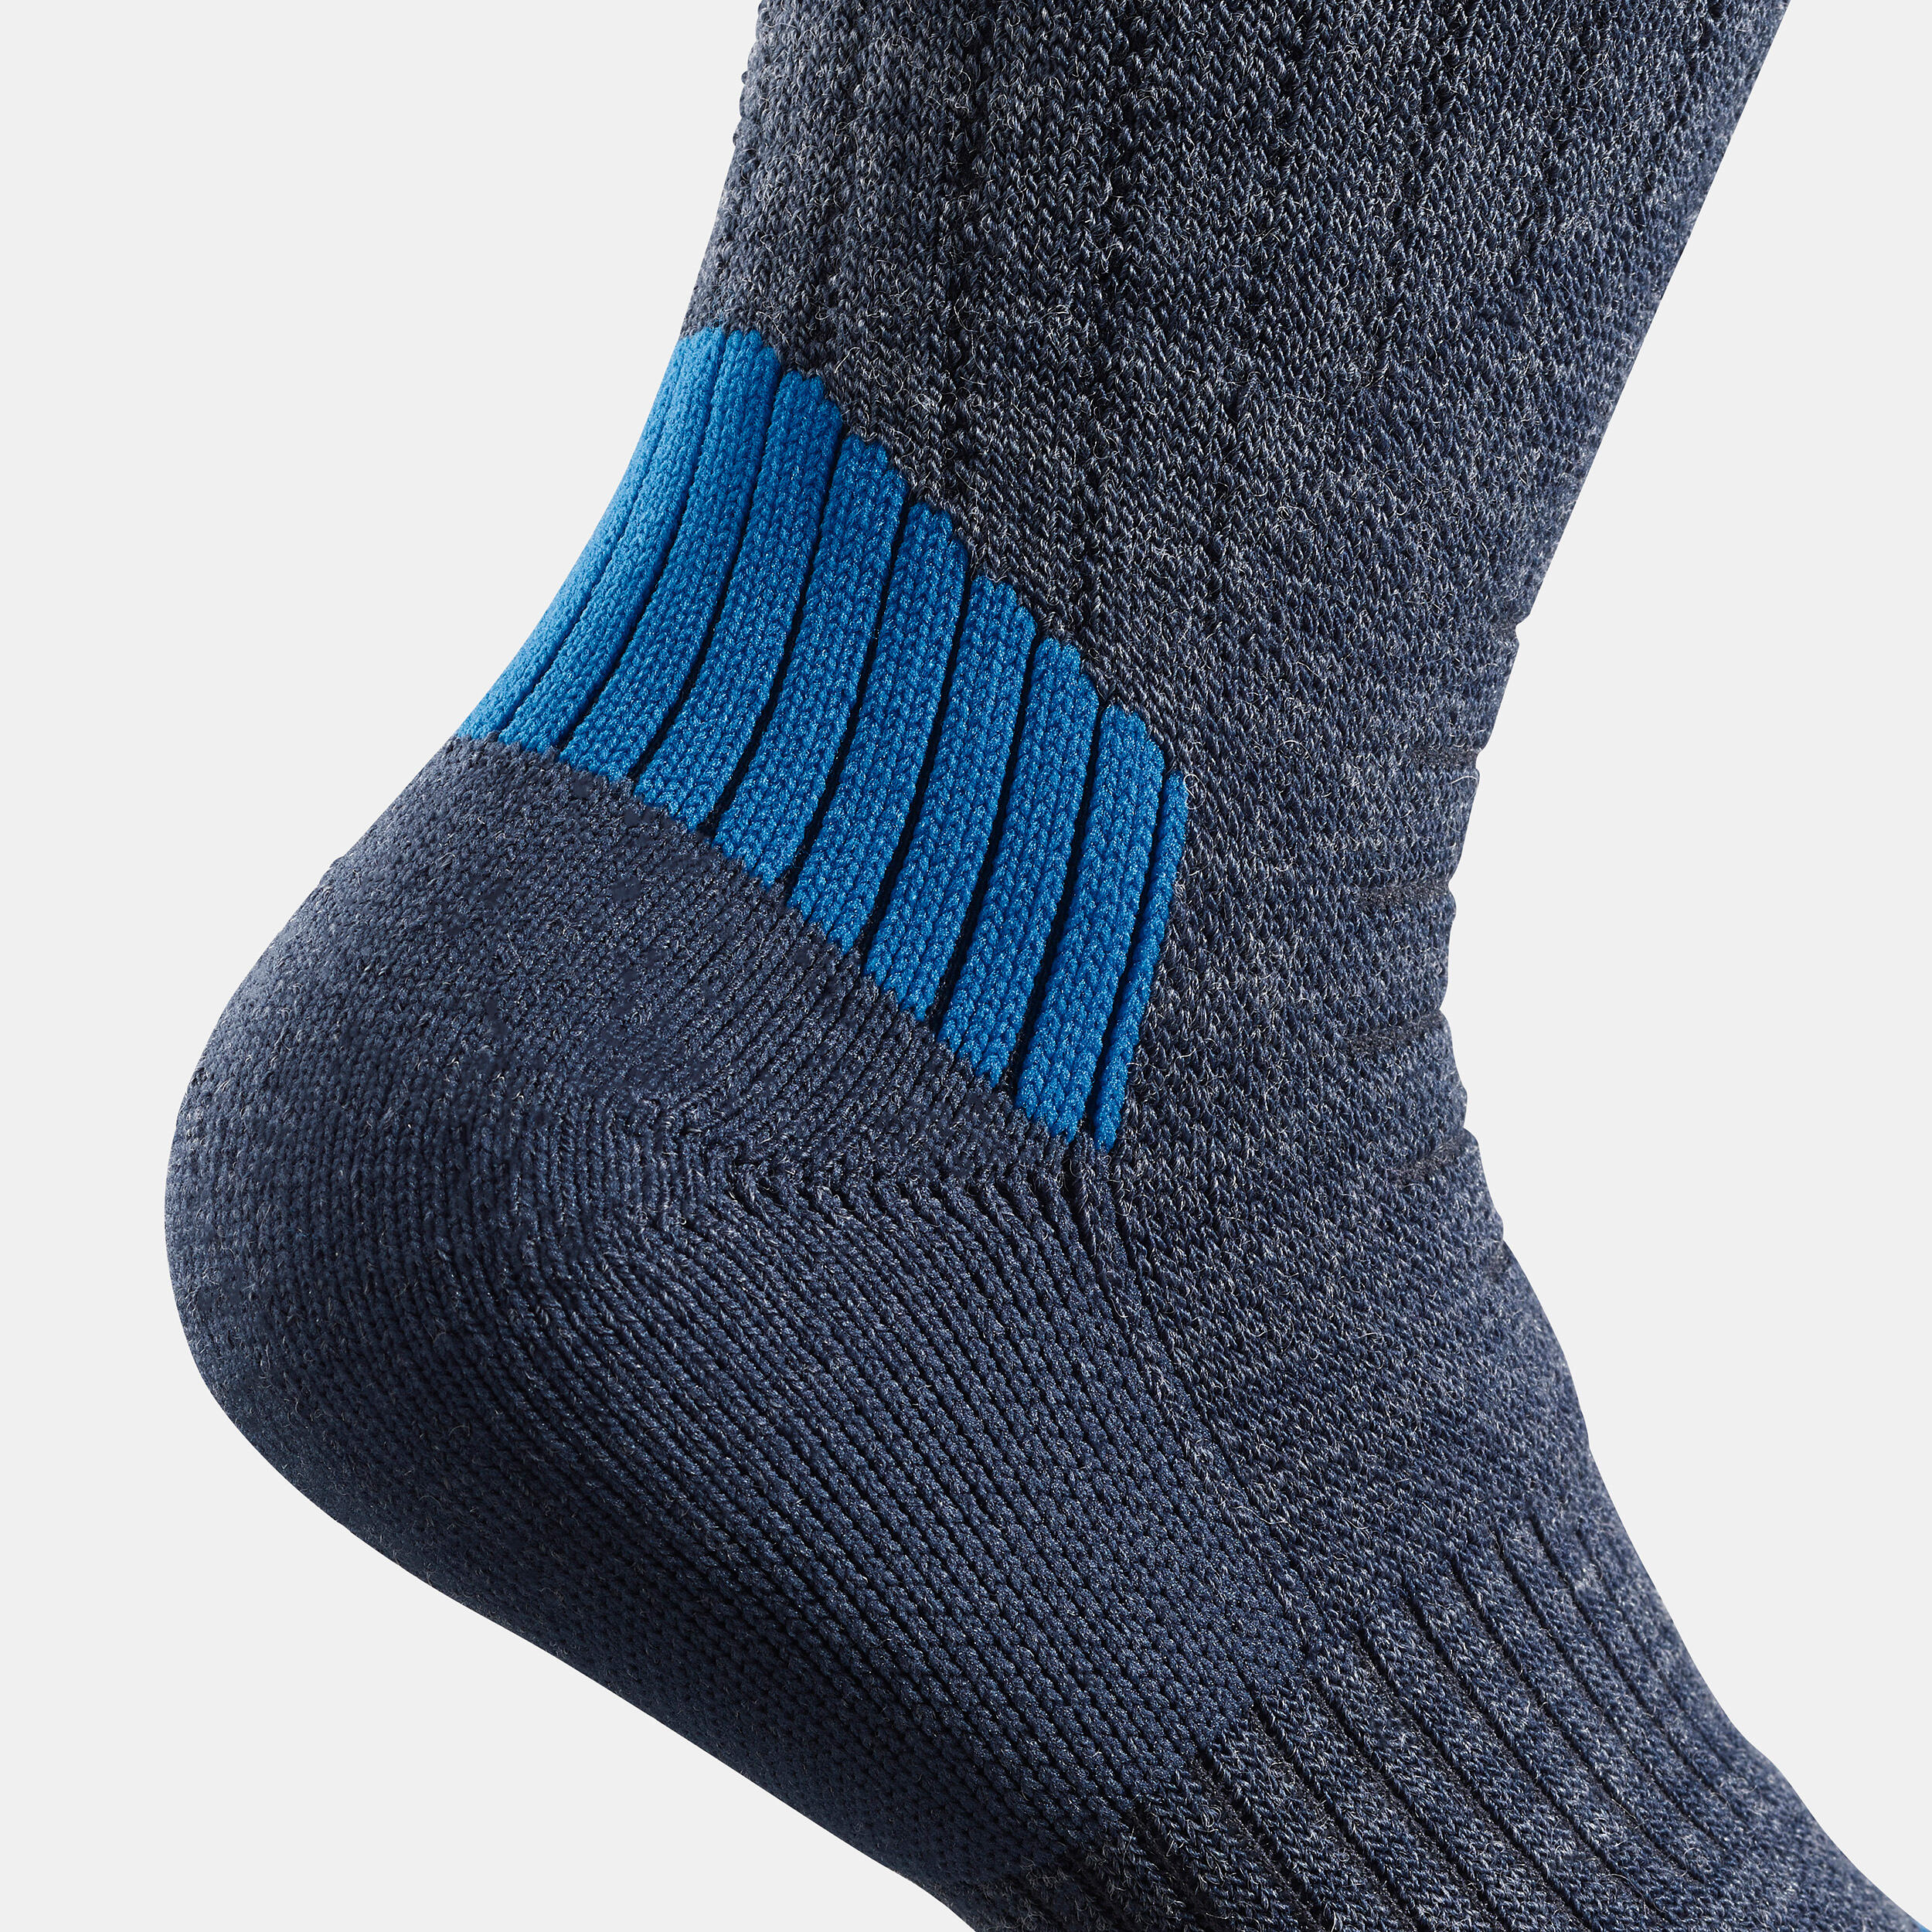 Kids’ Warm Hiking Socks SH100 Mid 2 Pairs 9/9